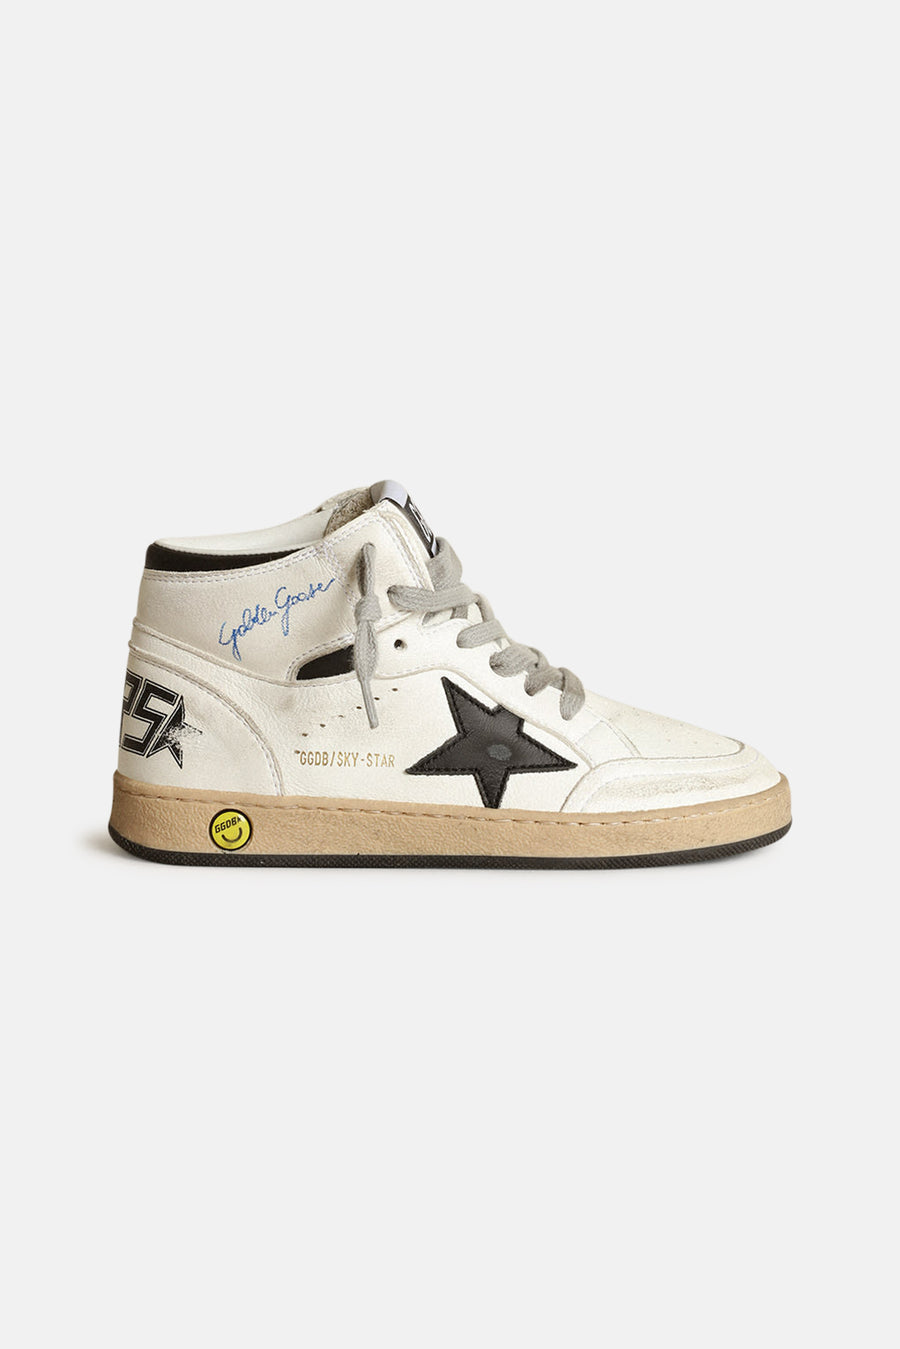 Kid's Sky Star Sneakers White/Black Star - blueandcream